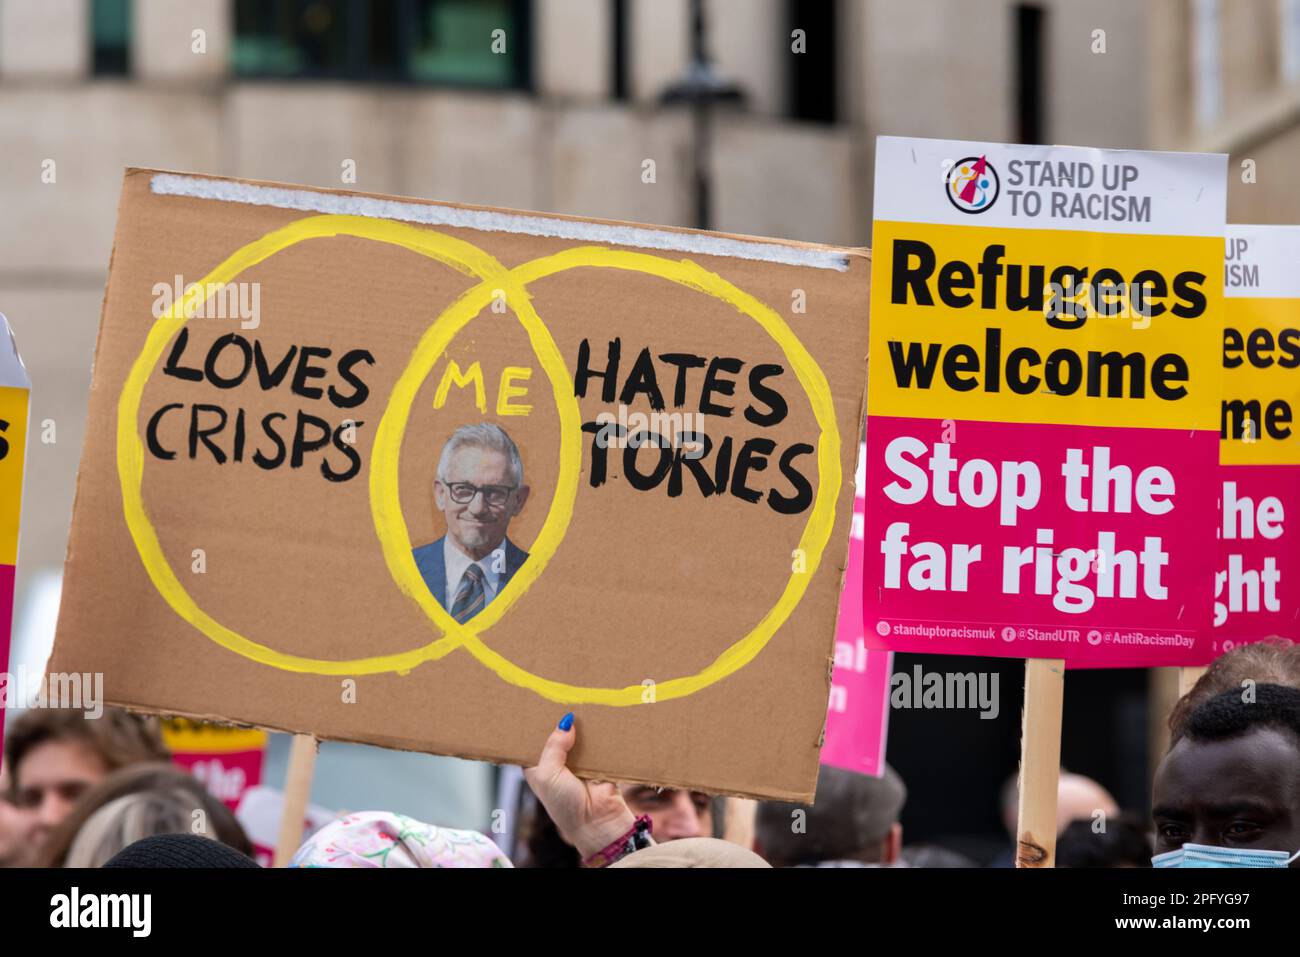 Protesta in corso a Londra in occasione della Giornata dell'ONU contro il razzismo. Alzati dal razzismo. Cartellone grafico di Gary Lineker Venn. I rifugiati sono i benvenuti Foto Stock